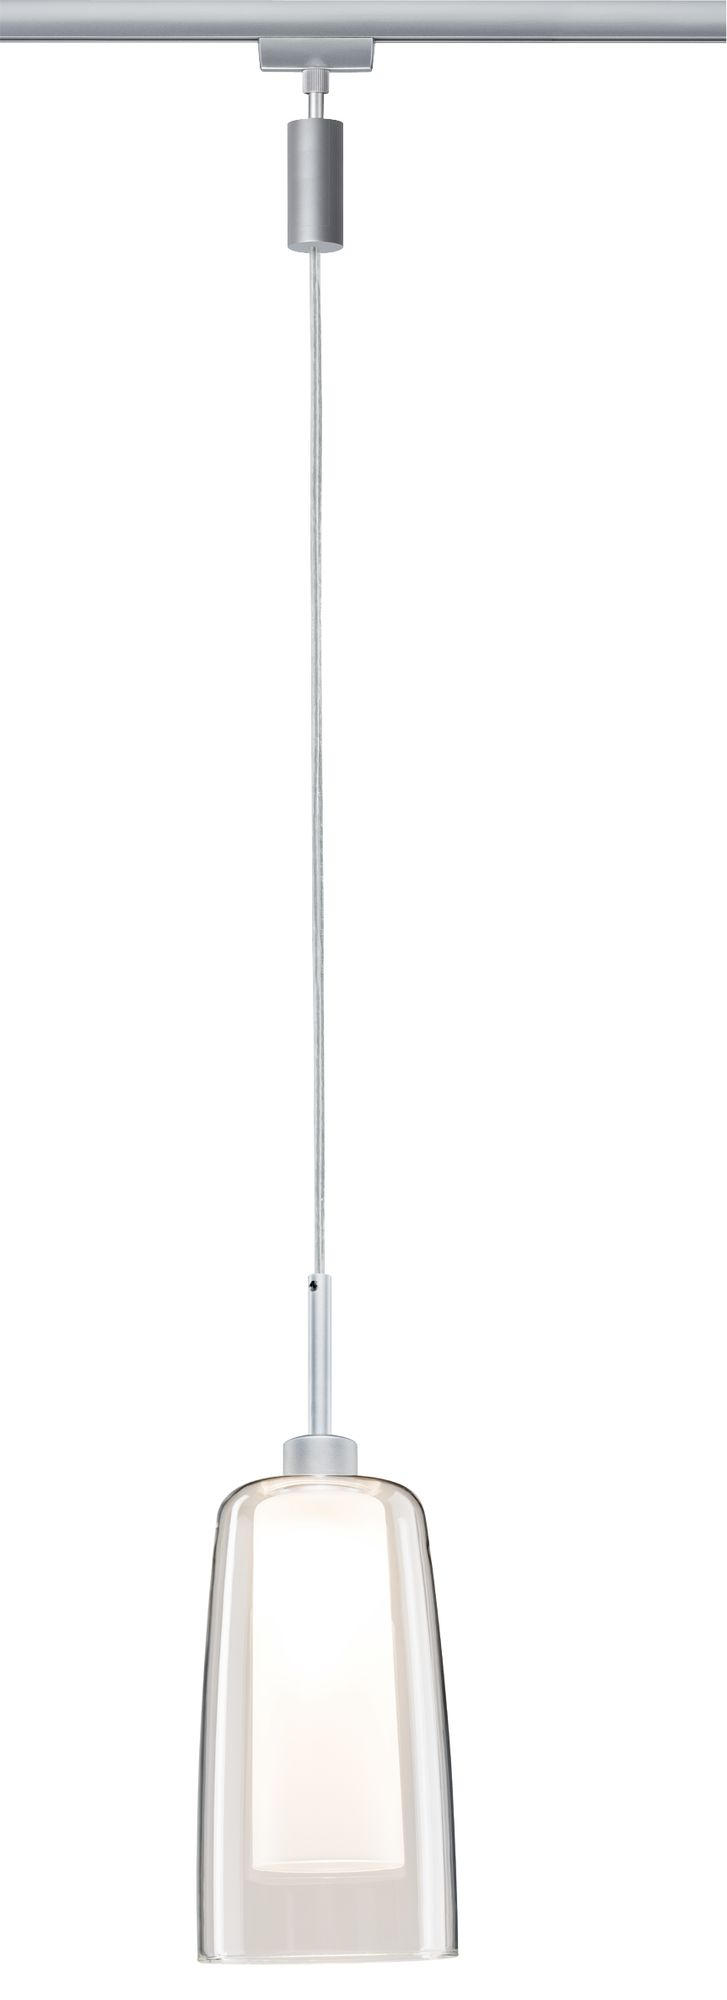 SCHIENENSYSTEM-HÄNGELEUCHTE URail 158 cm   - Klar/Chromfarben, Design, Glas/Metall (158cm) - Paulmann